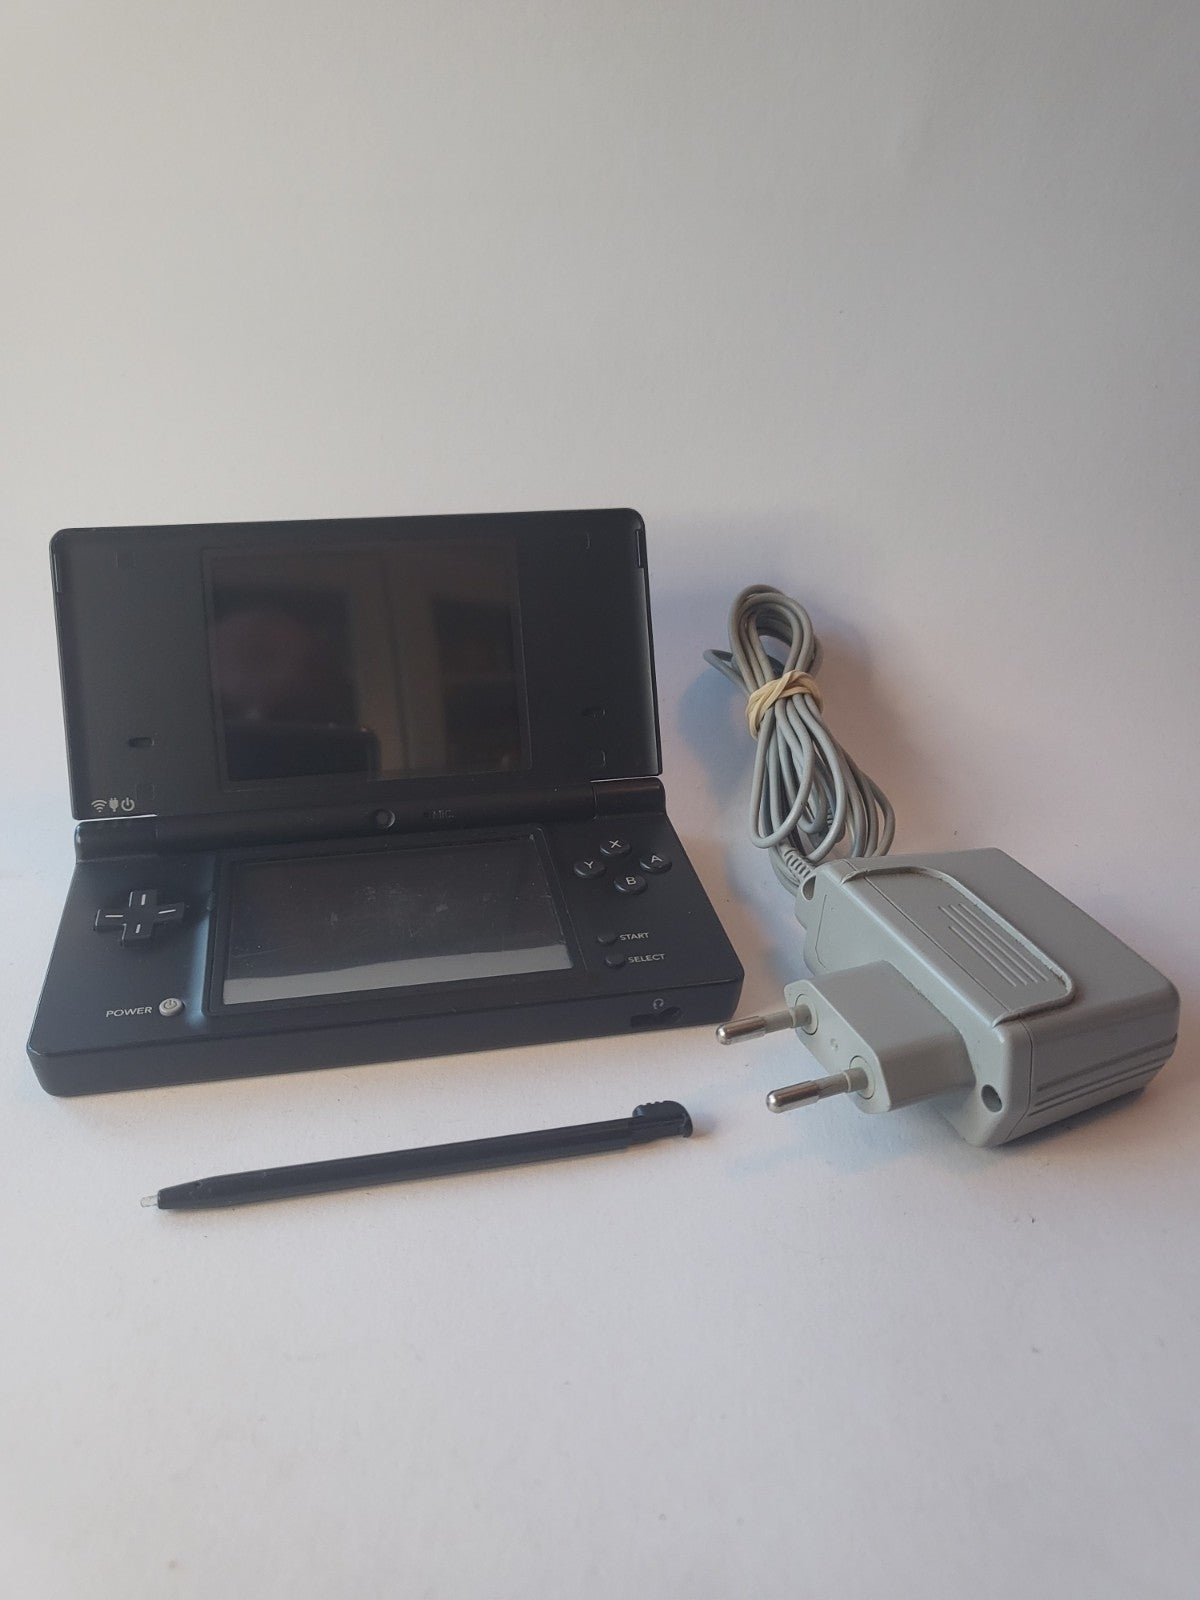 Nintendo DS Lite Zwart met touchpen en oplader